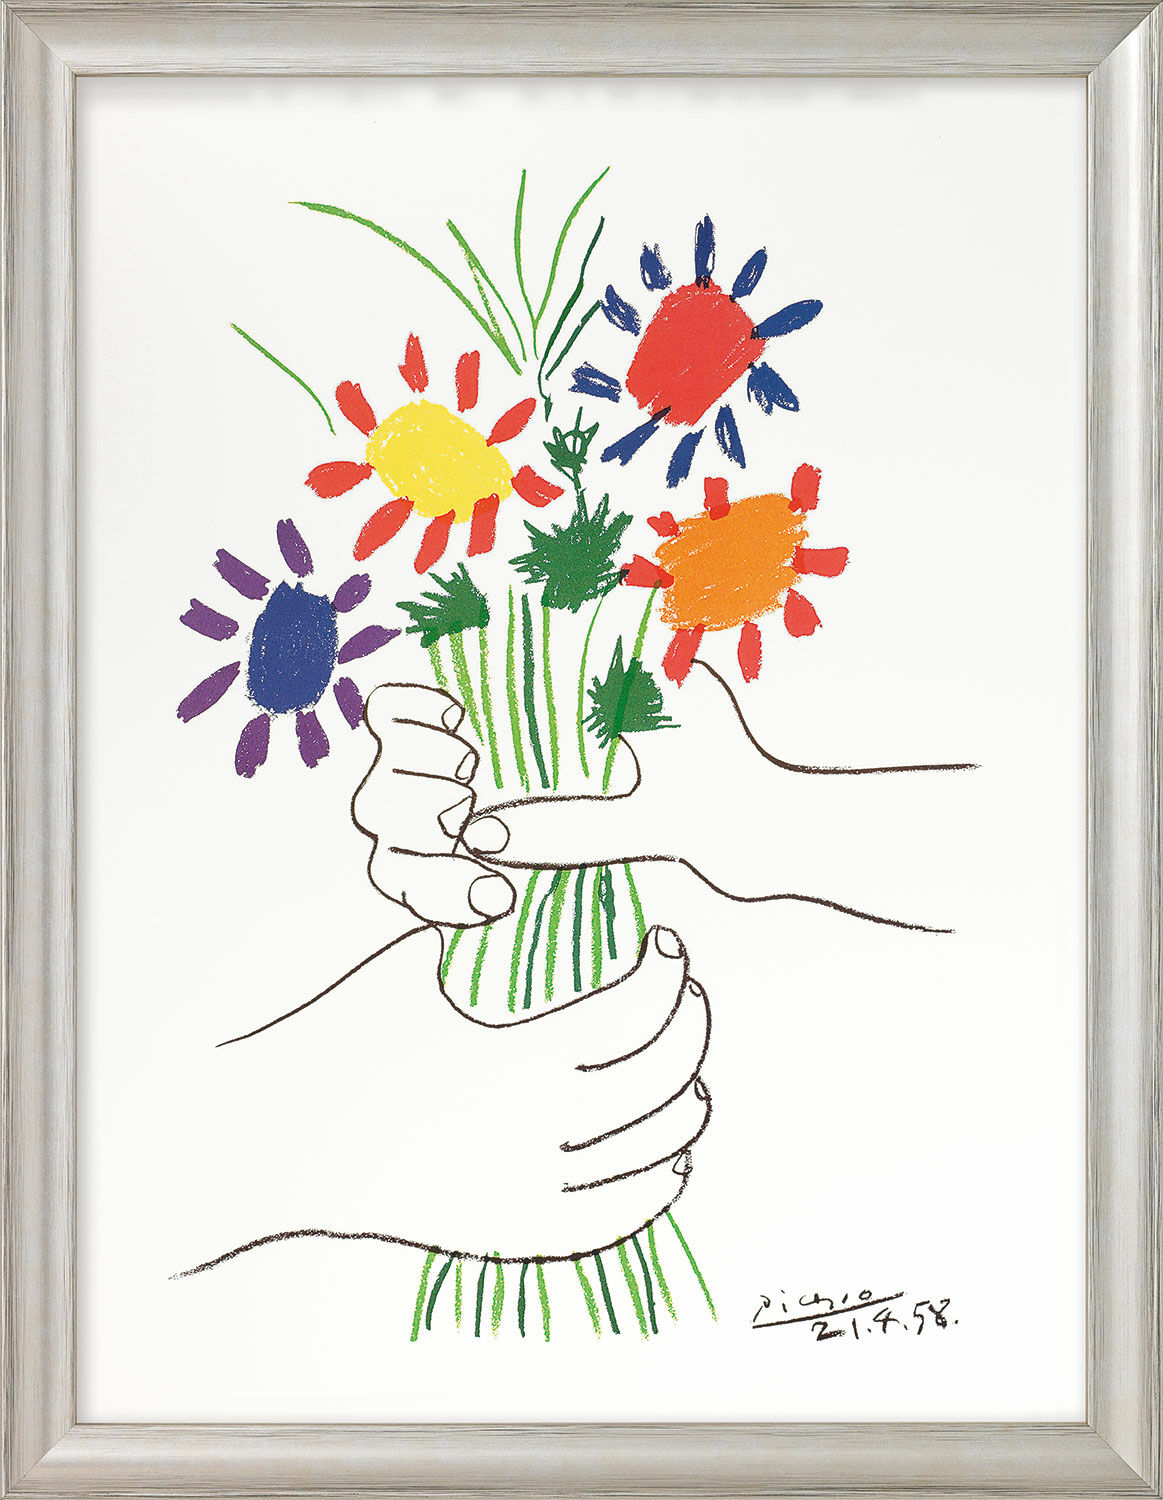 Tableau "Mains avec bouquet de fleurs" (1958), encadré von Pablo Picasso